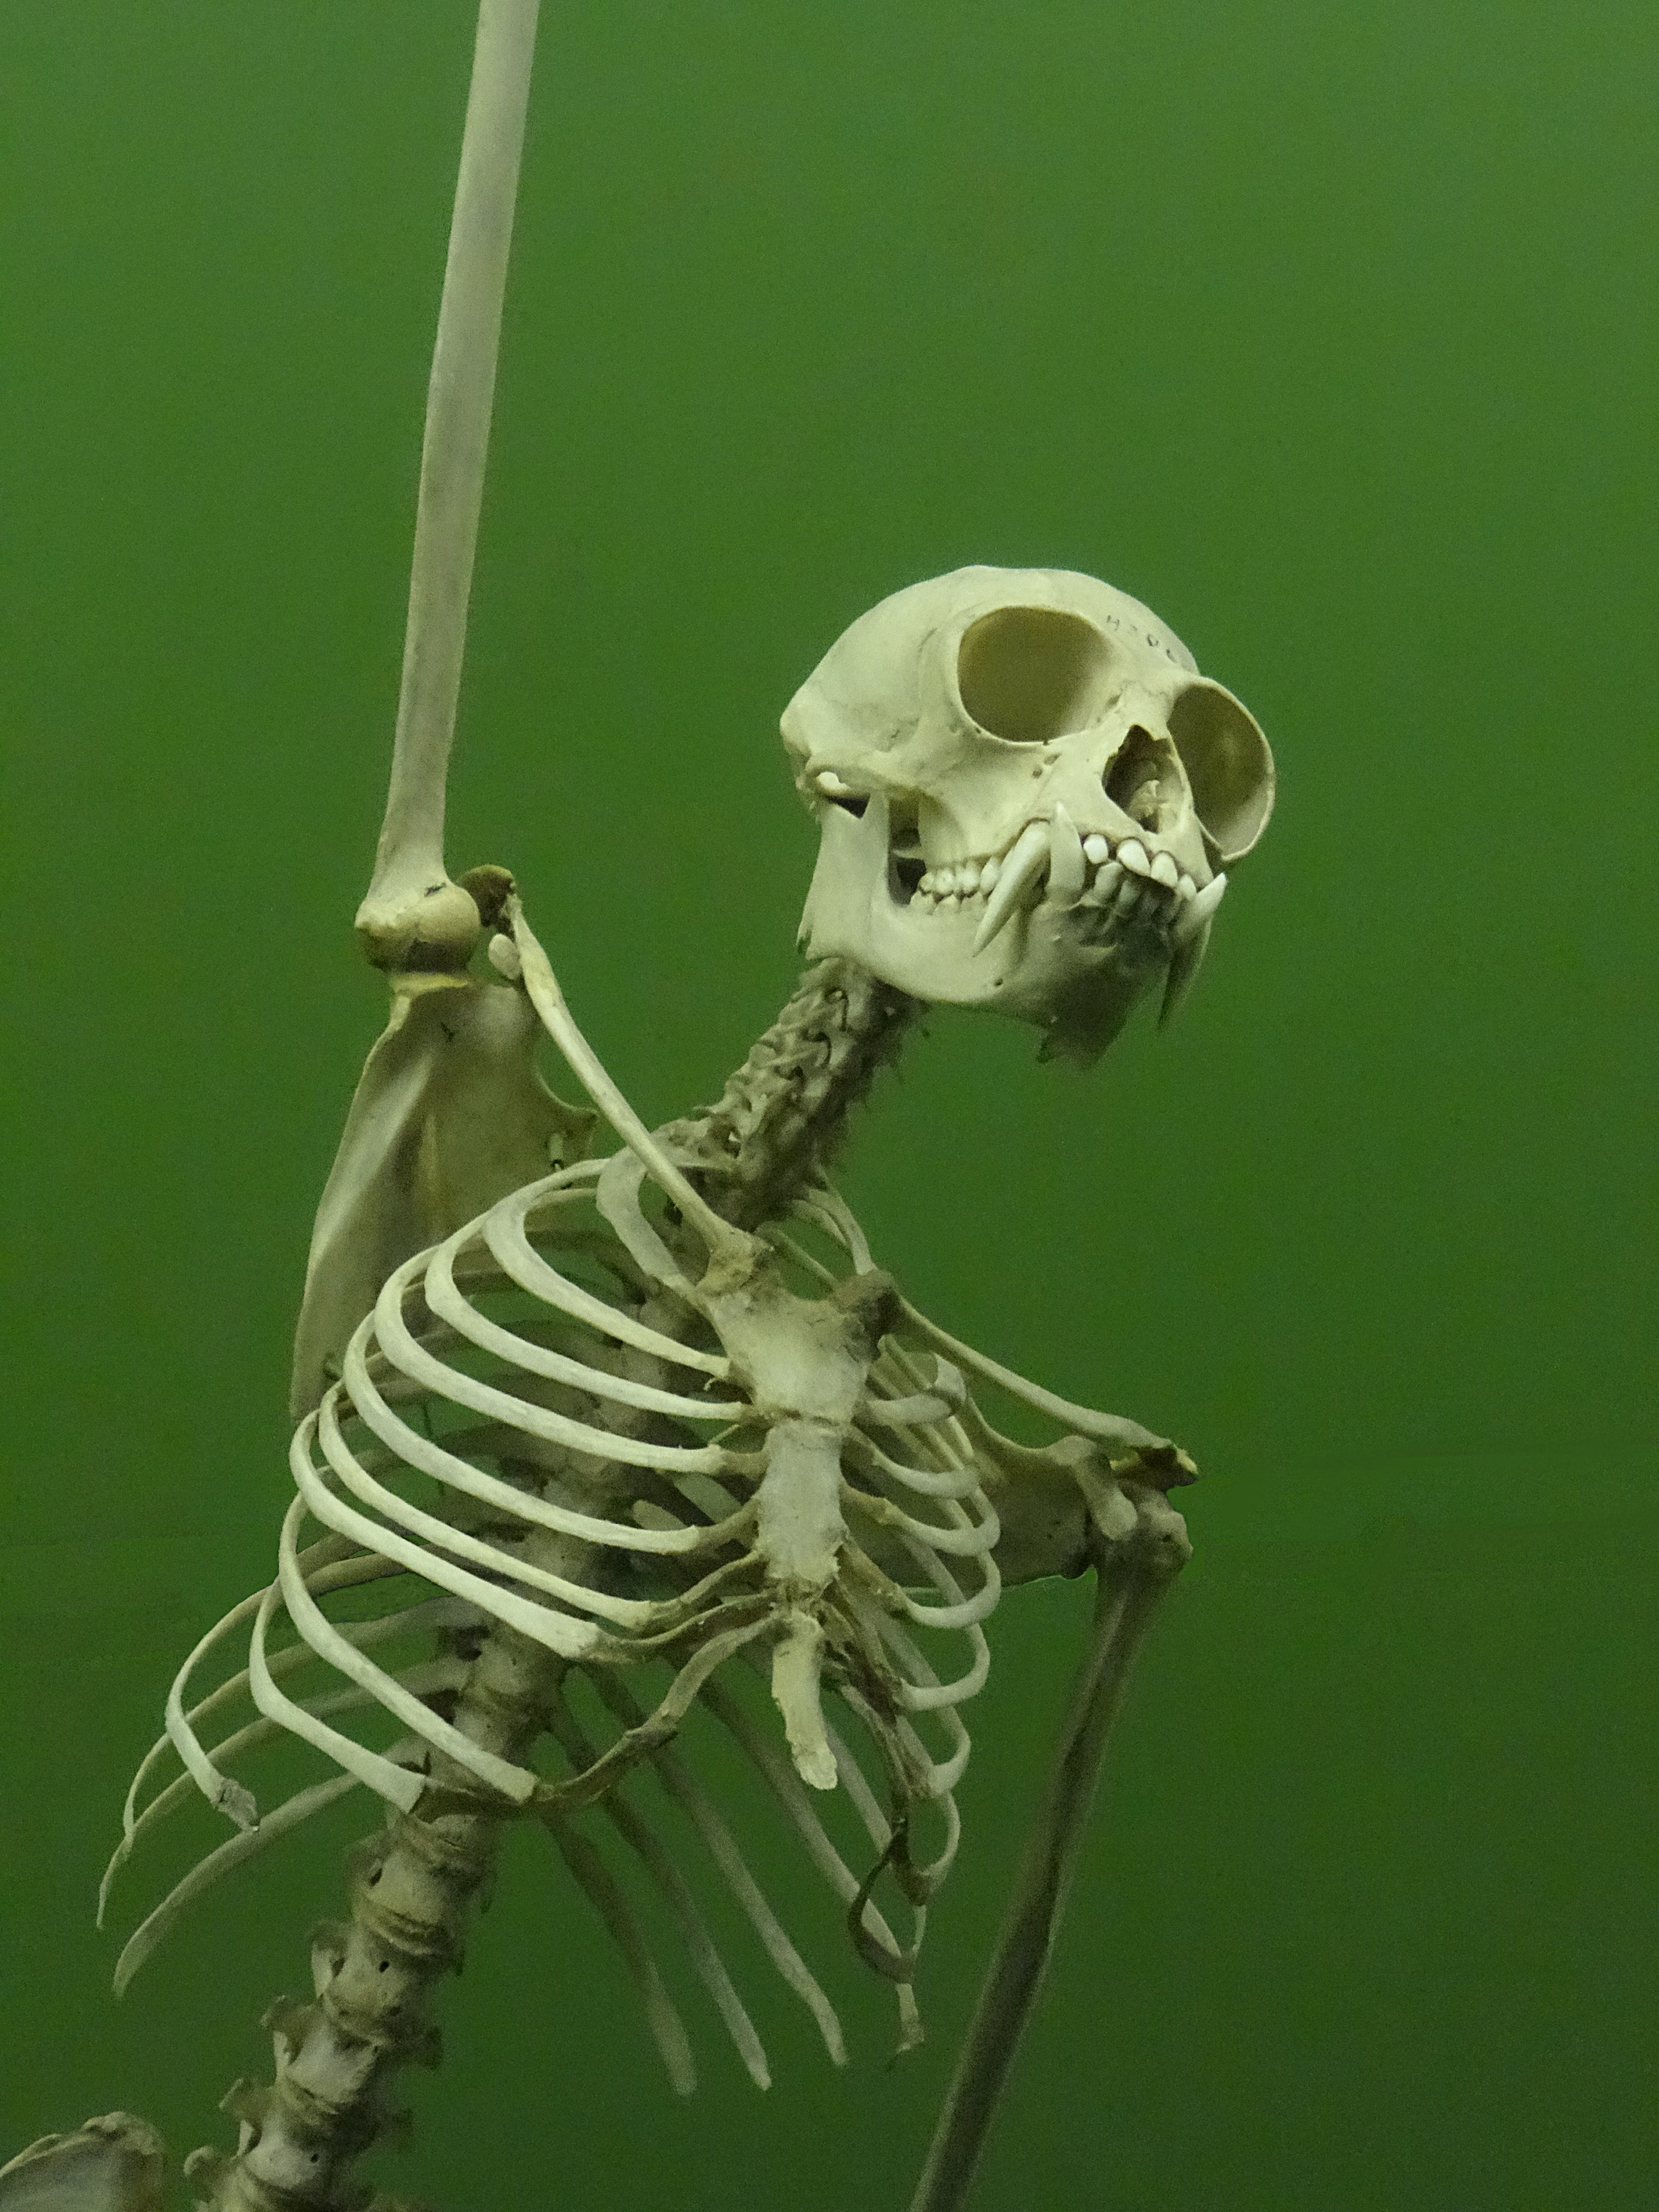 Gibbon skeleton at AMNH